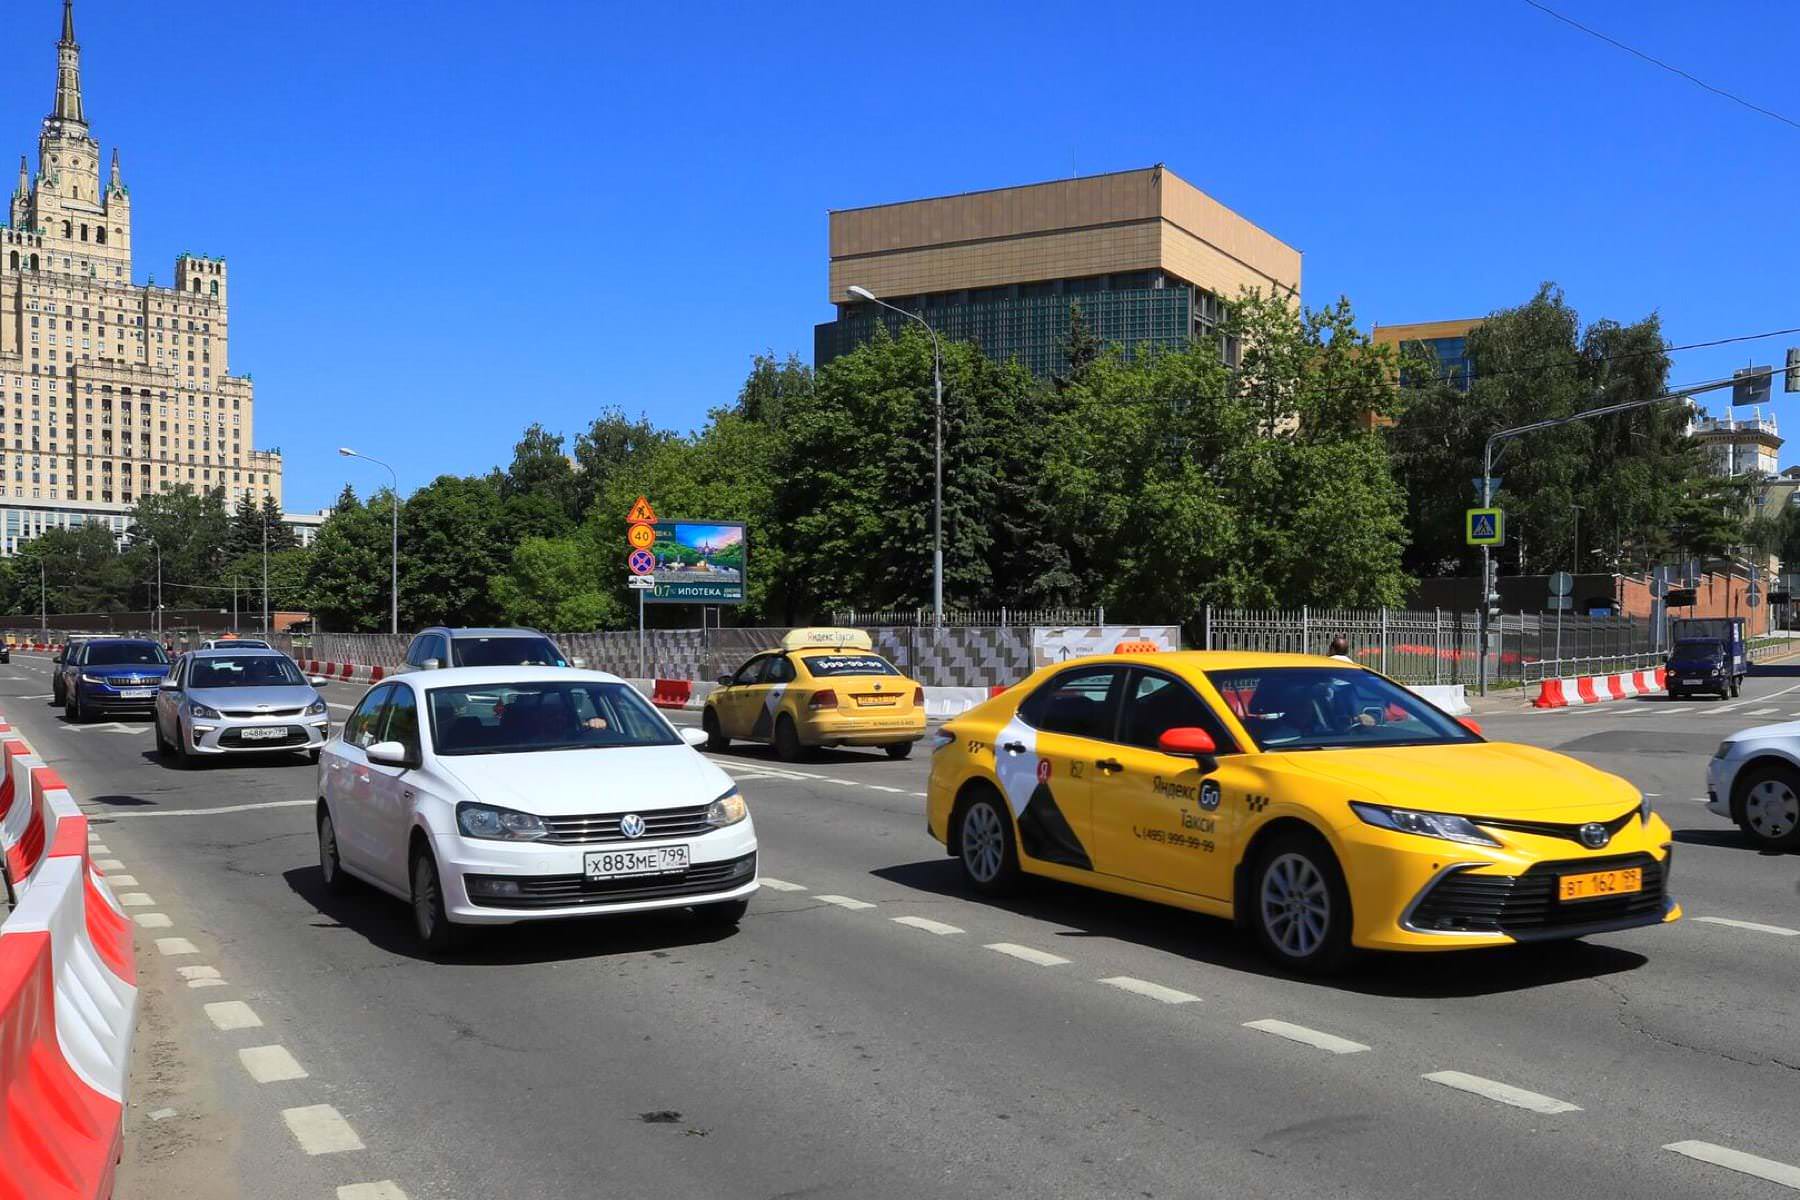 Водителям такси придется работать по-новому, а цены на поездки для пассажиров взлетят